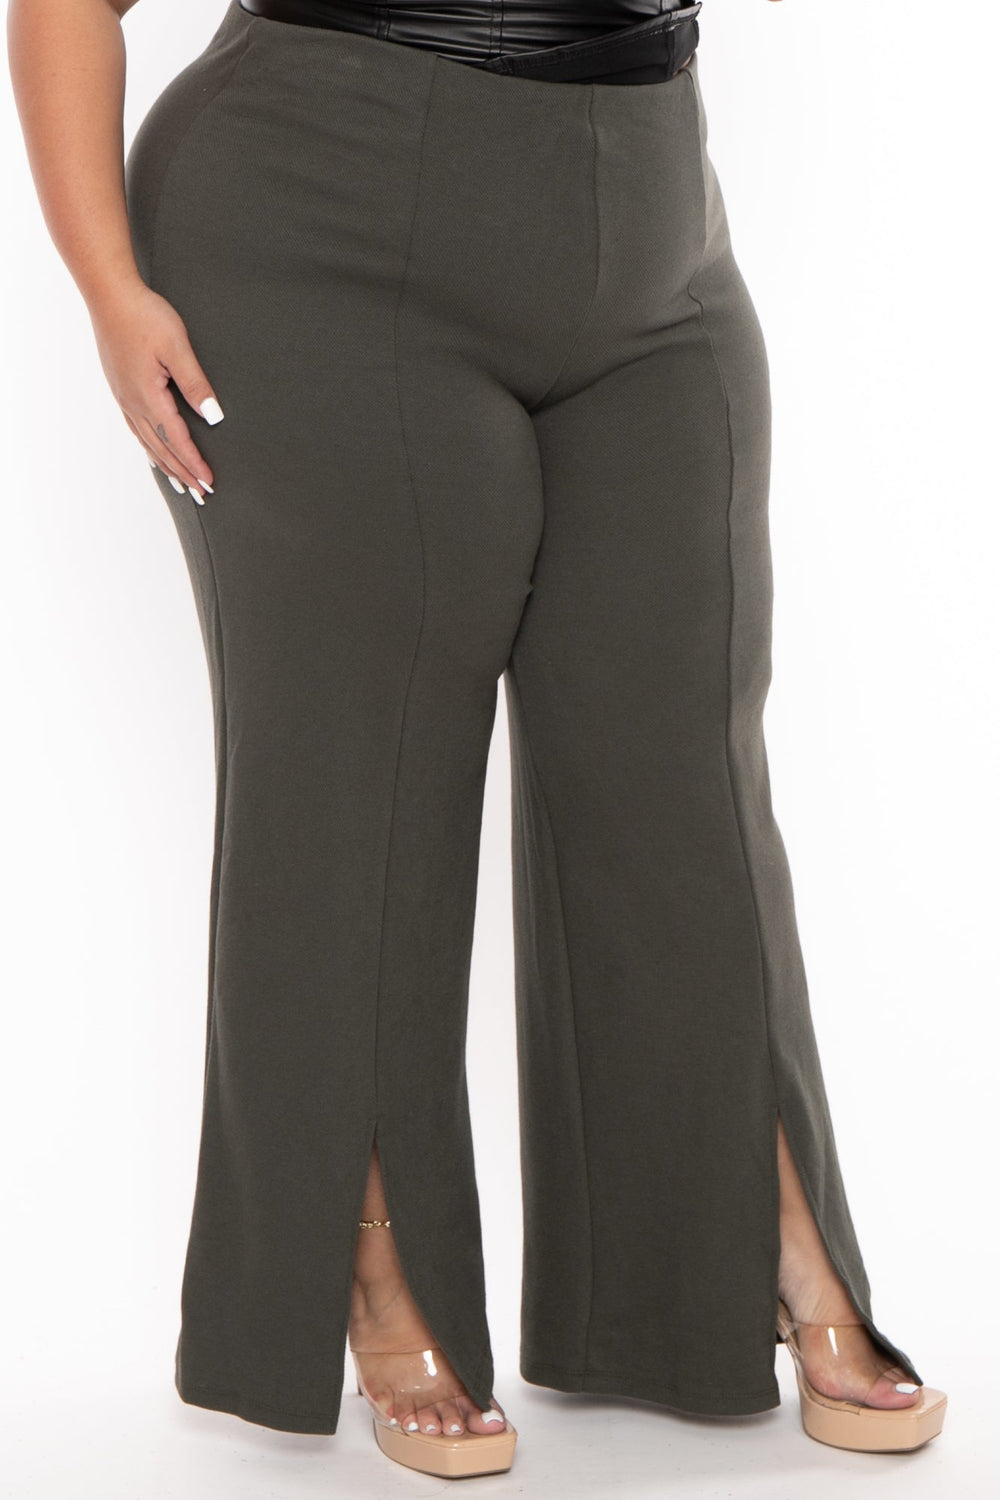 CULTURE CODE Pants 1X / Green Plus Size High Waist Front Slit Pants  - Grey